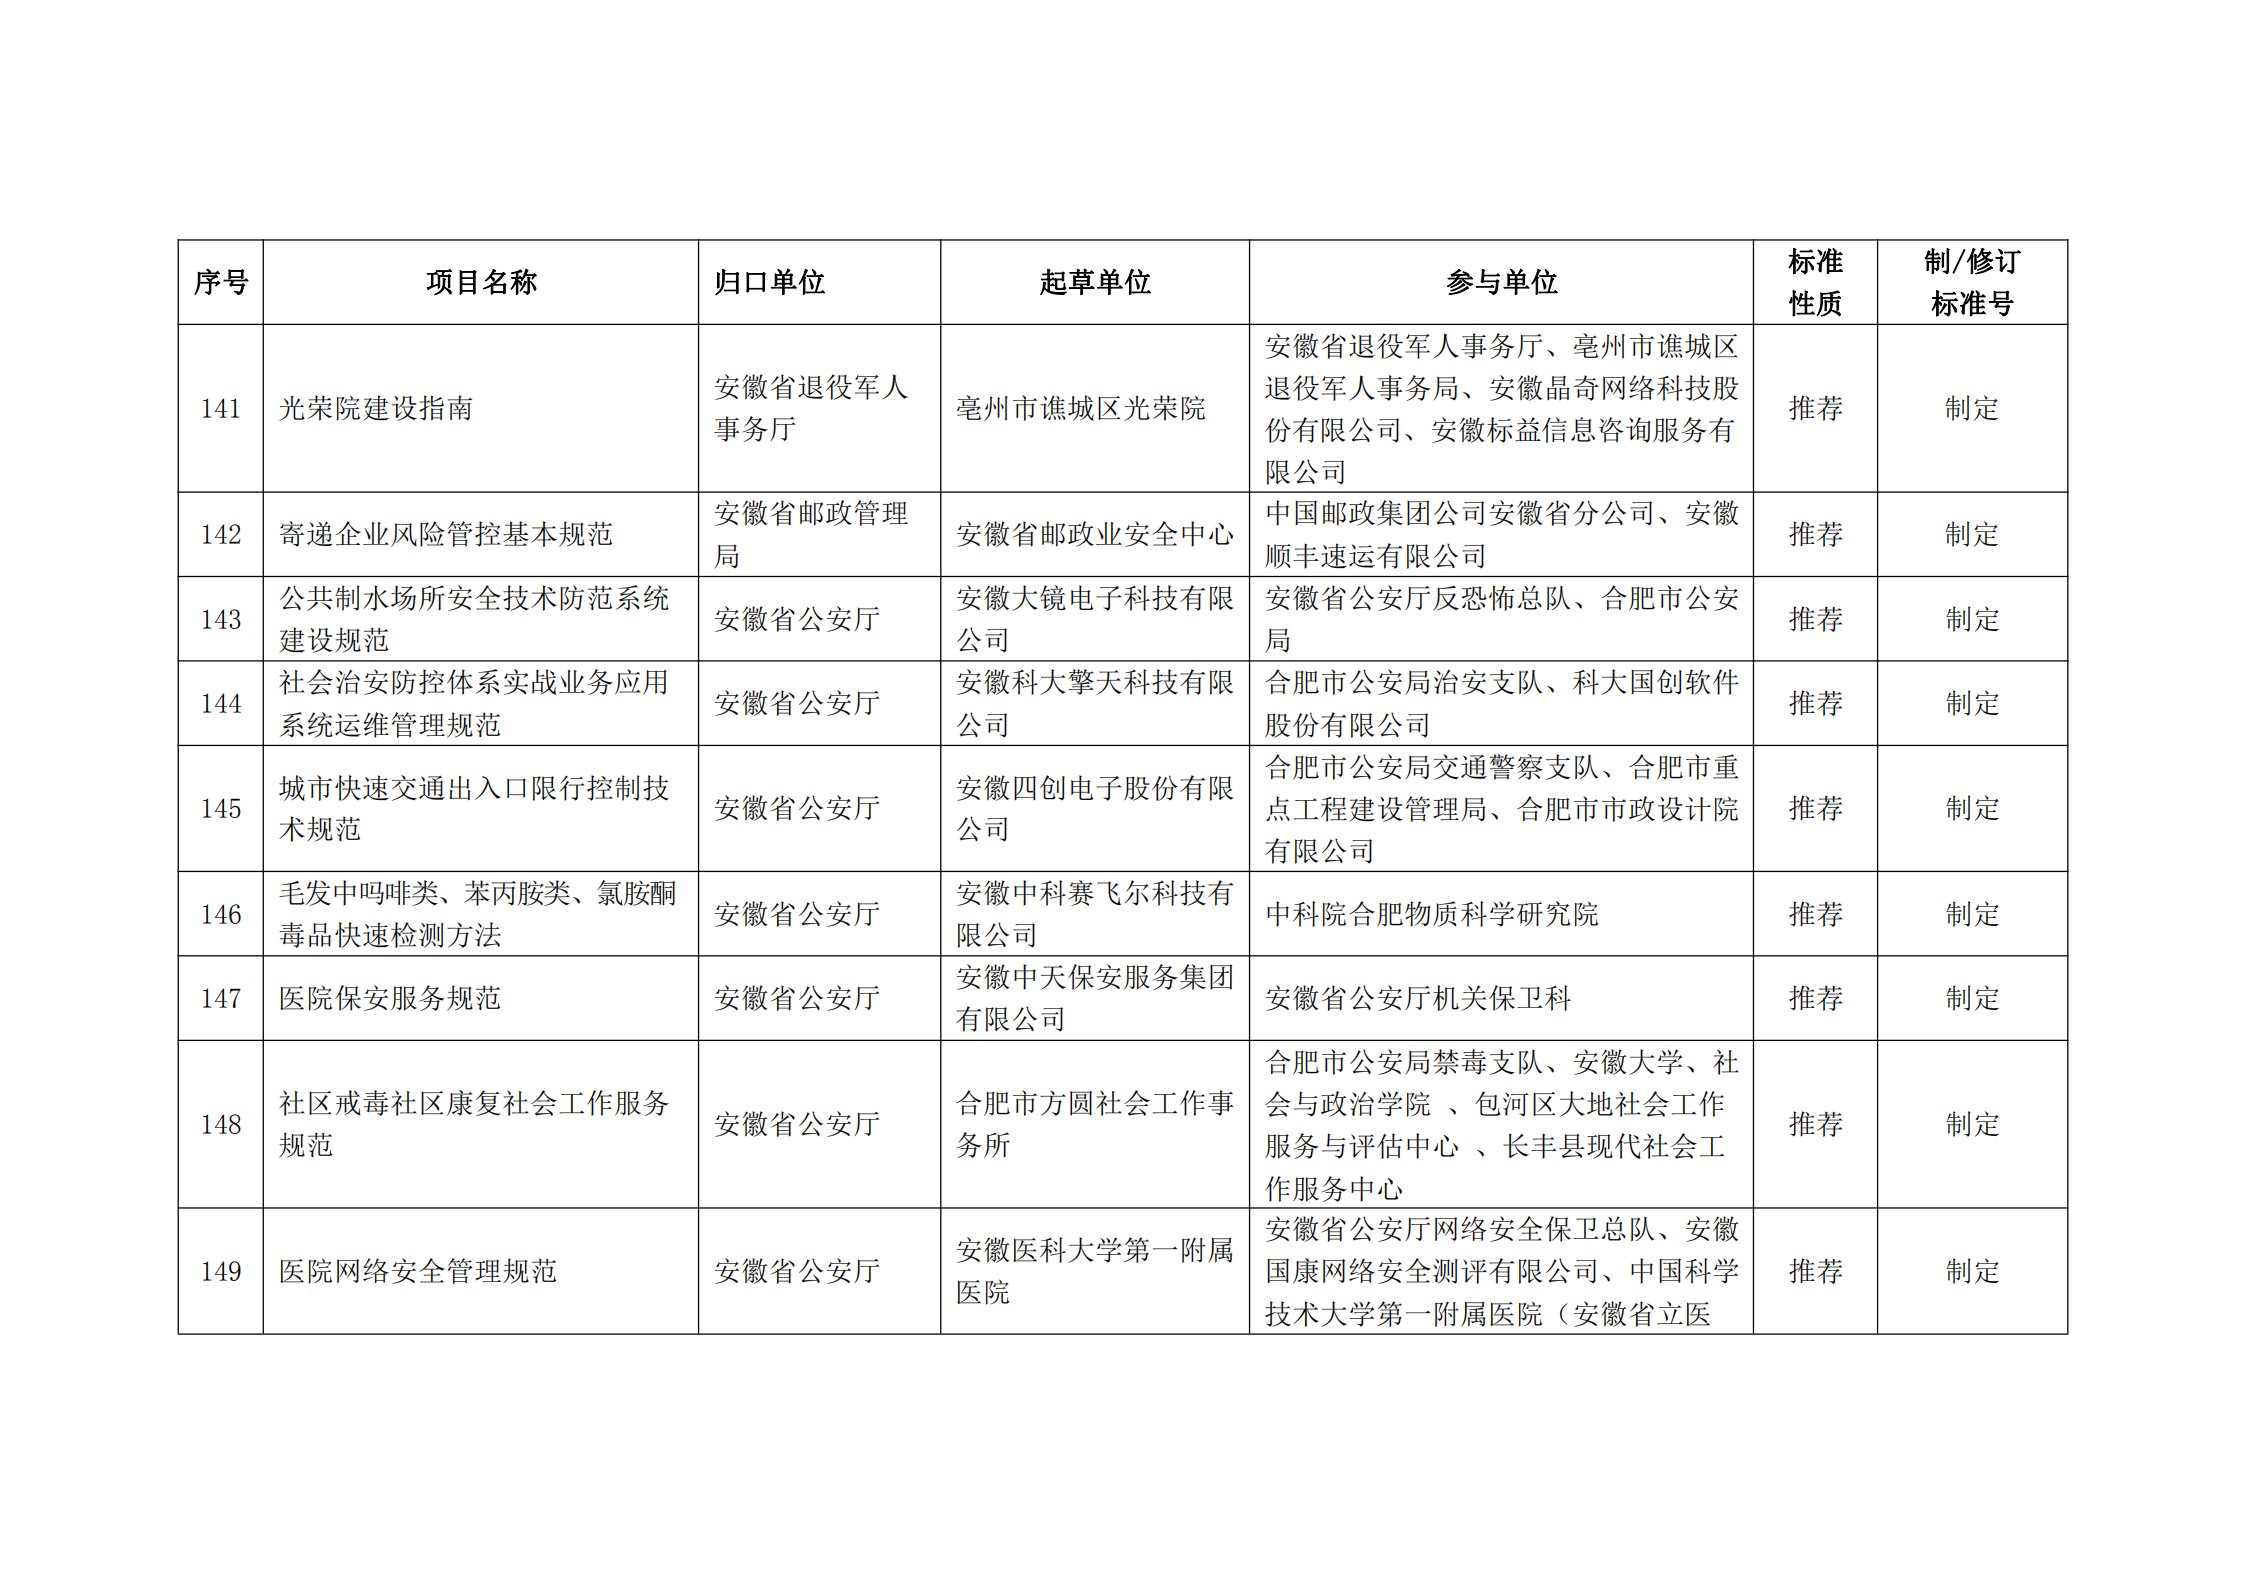 2020 年第二批安徽省地方标准制、修订计划项目汇总表(图17)